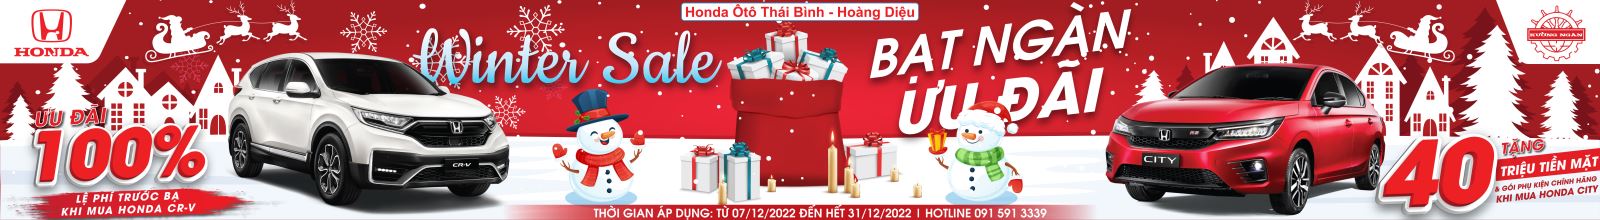 Chương trình Khuyến mãi đặc biệt trong tháng 12 dành cho Quý Khách hàng mua xe tại Honda Ôtô Thái Bình - Hoàng Diệu